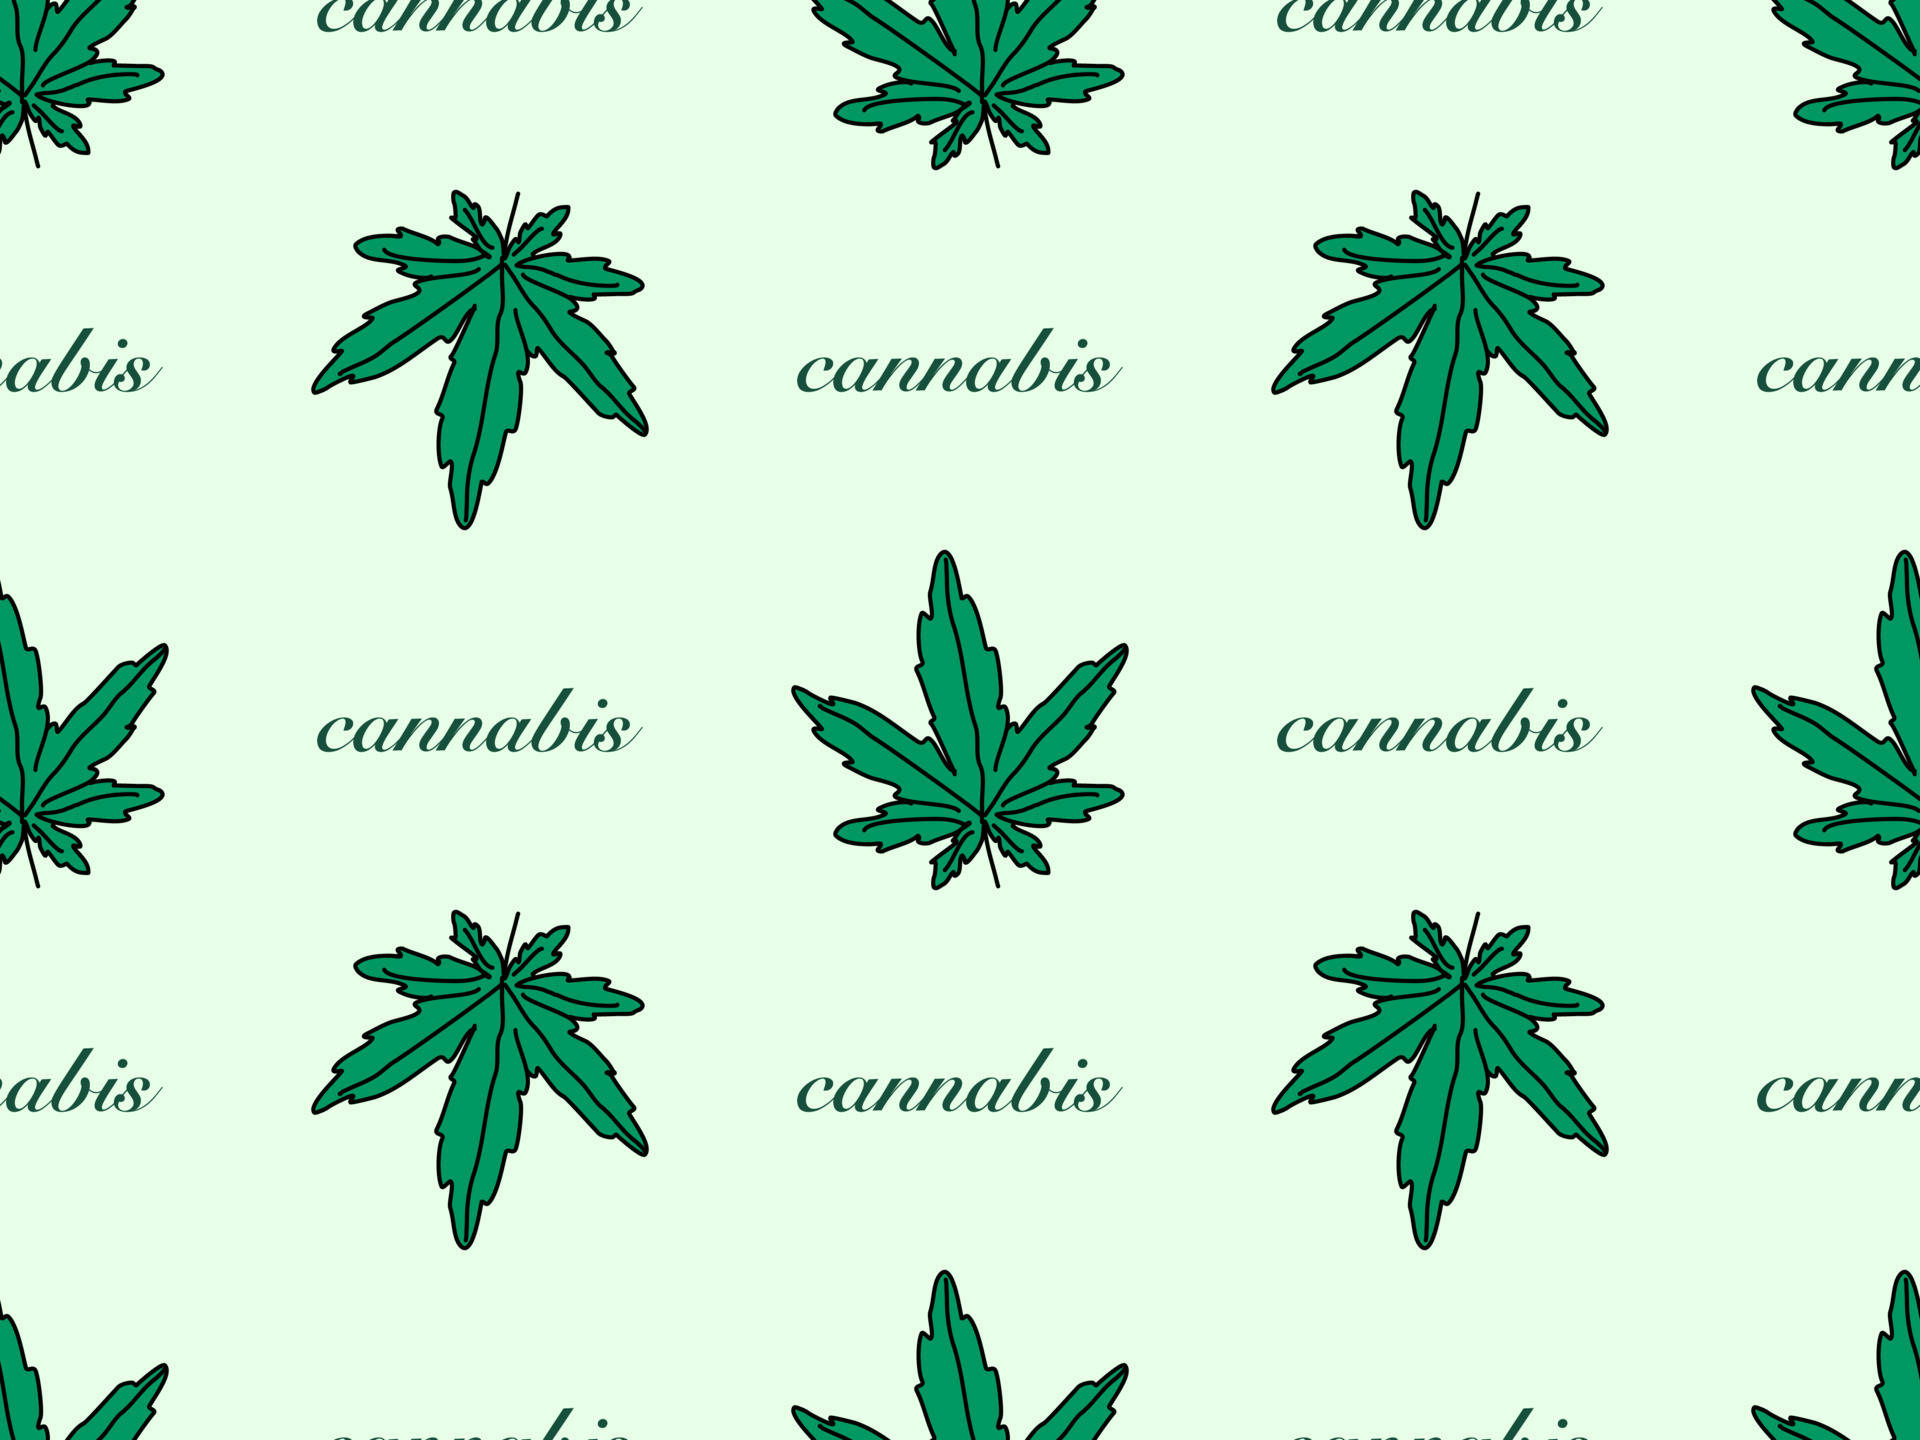 Firarcannabis-kulturen. Wallpaper